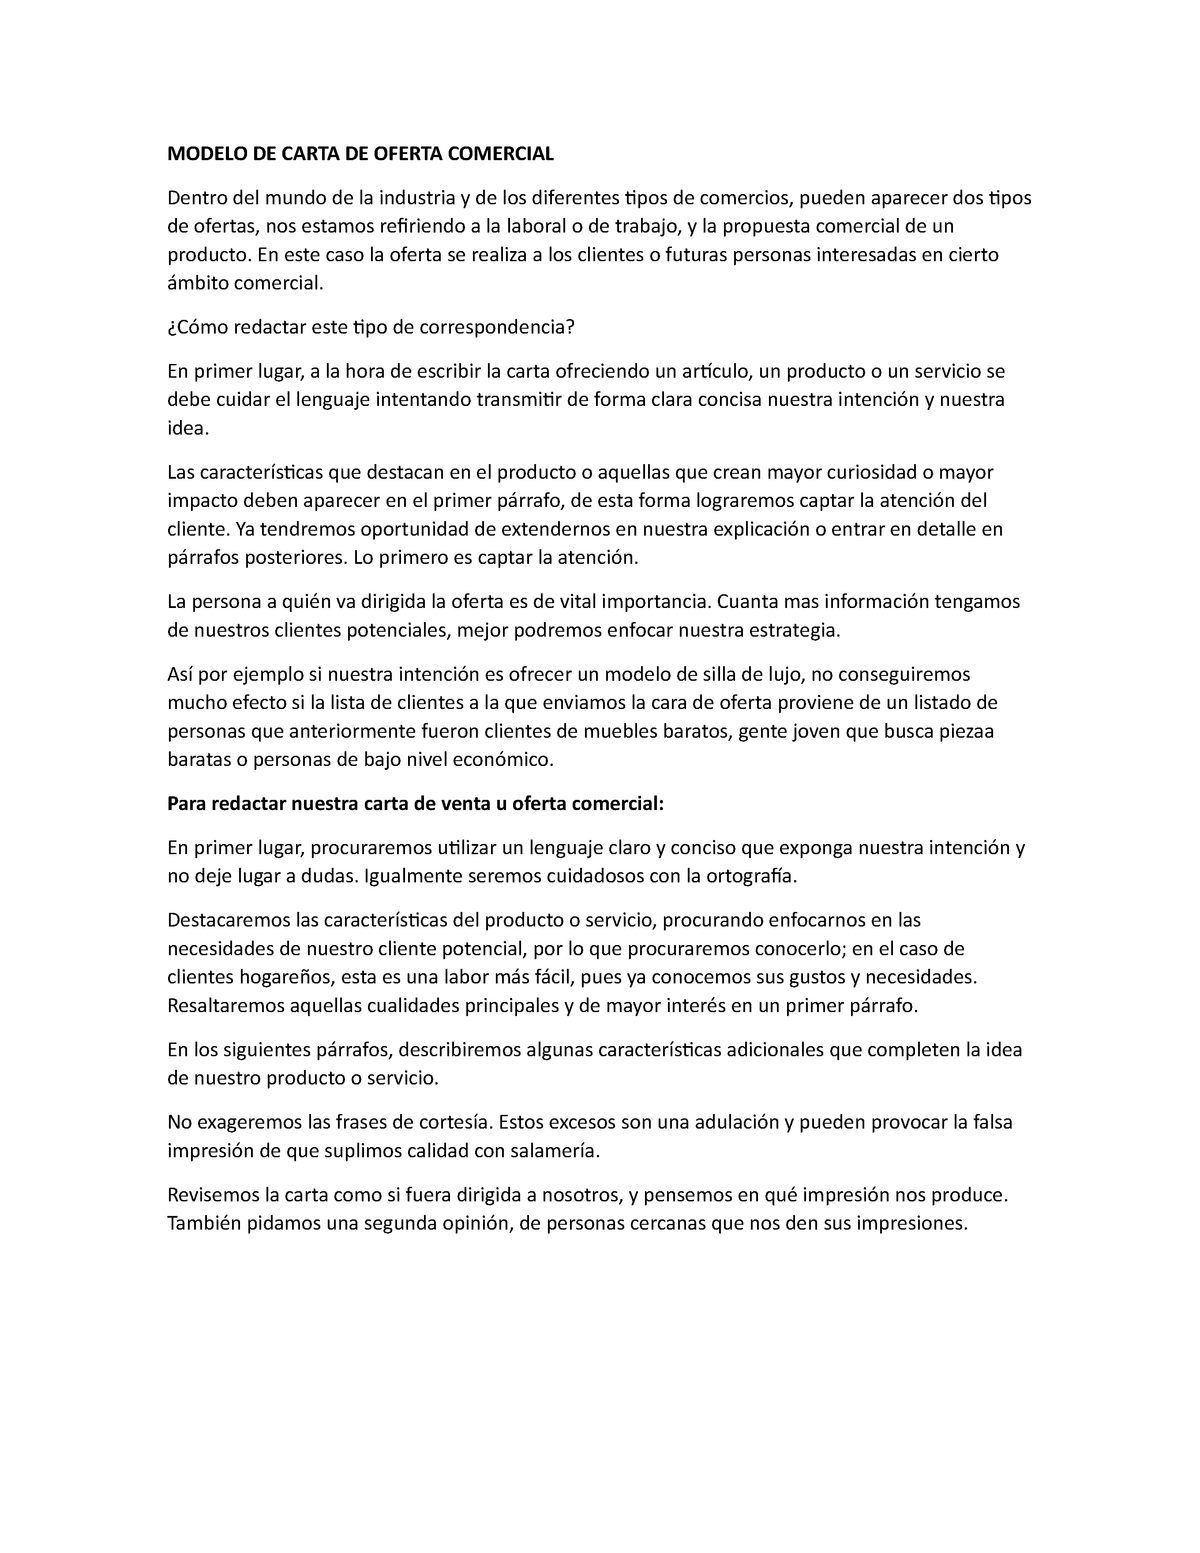 Modelo DE Carta DE Oferta Comercial - MODELO DE CARTA DE OFERTA COMERCIAL  Dentro del mundo de la - Studocu